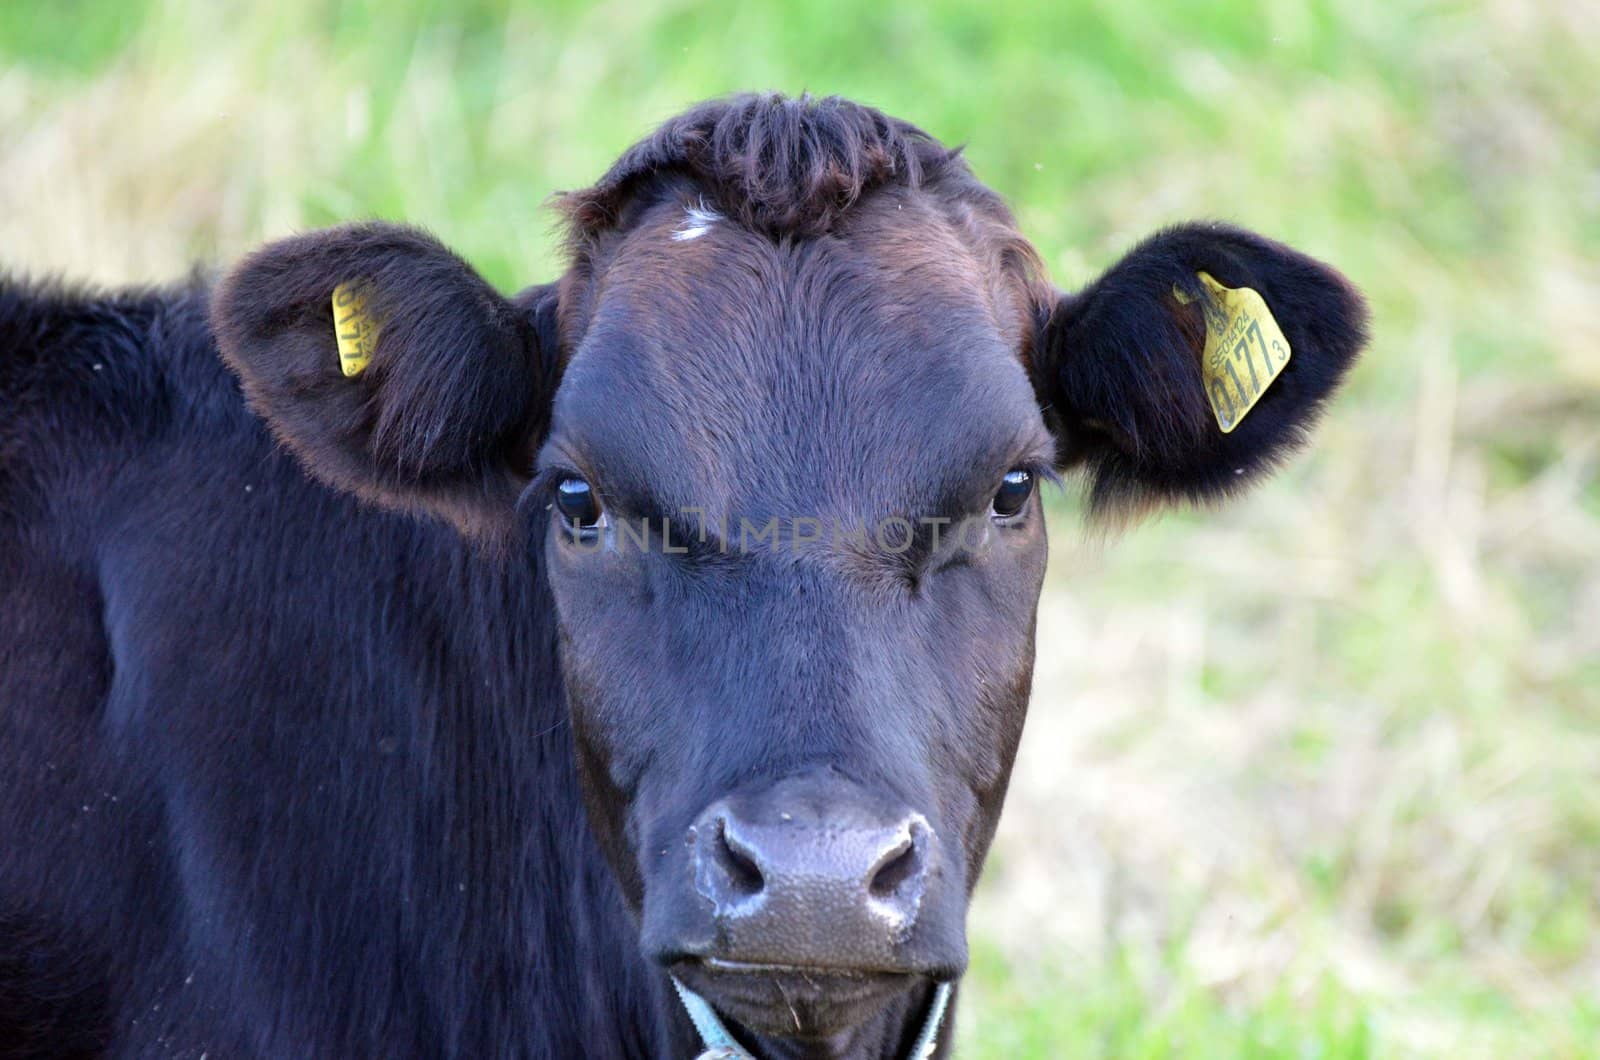 Black cow by ljusnan69